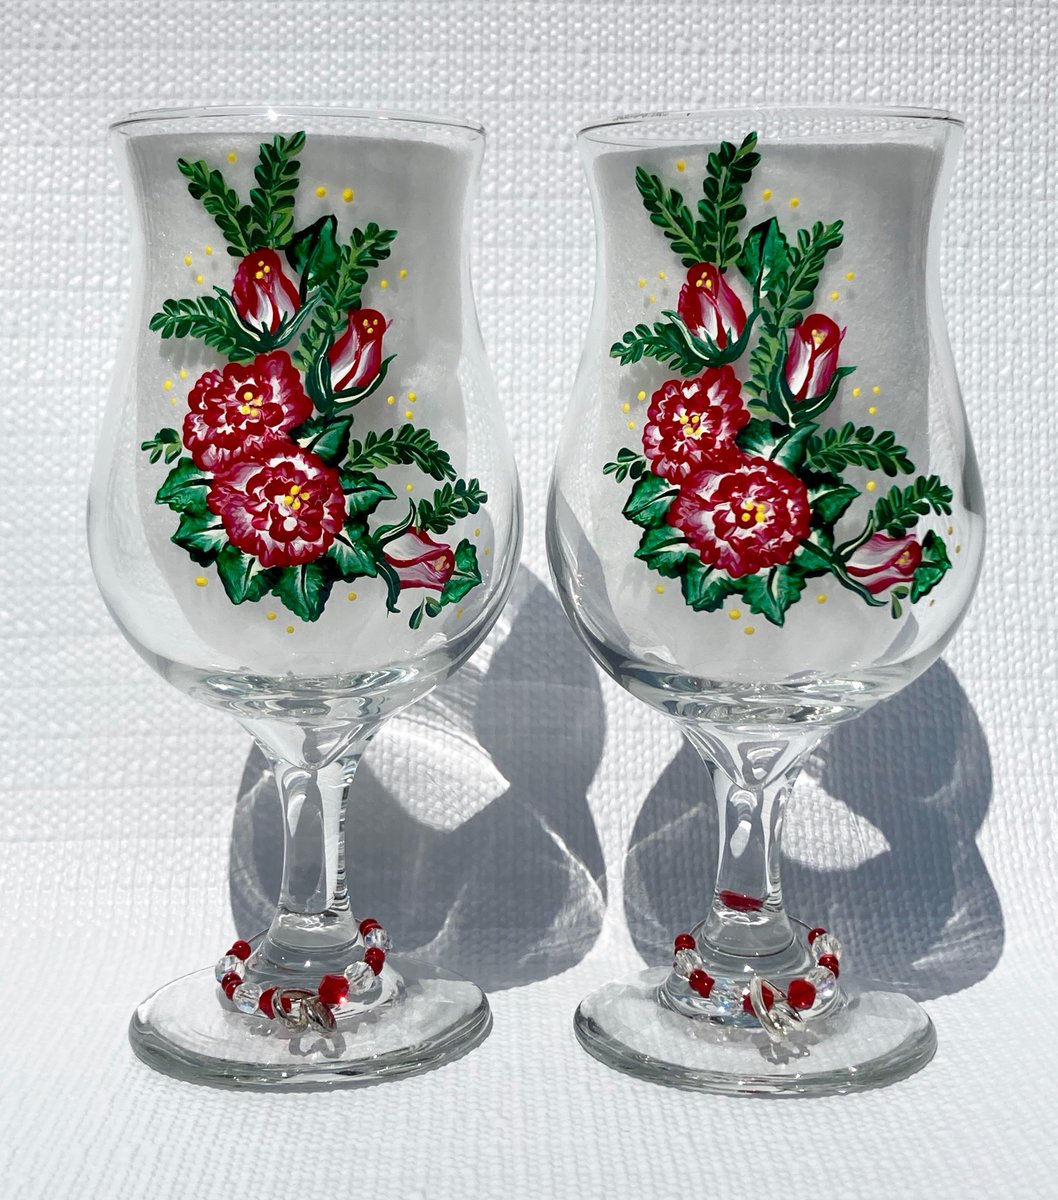 Red rose glasses etsy.com/listing/560241… #redrose #glasses #handpainted #SMILEtt23 #craftBizParty #etsy #etsyhandmade #etsylove